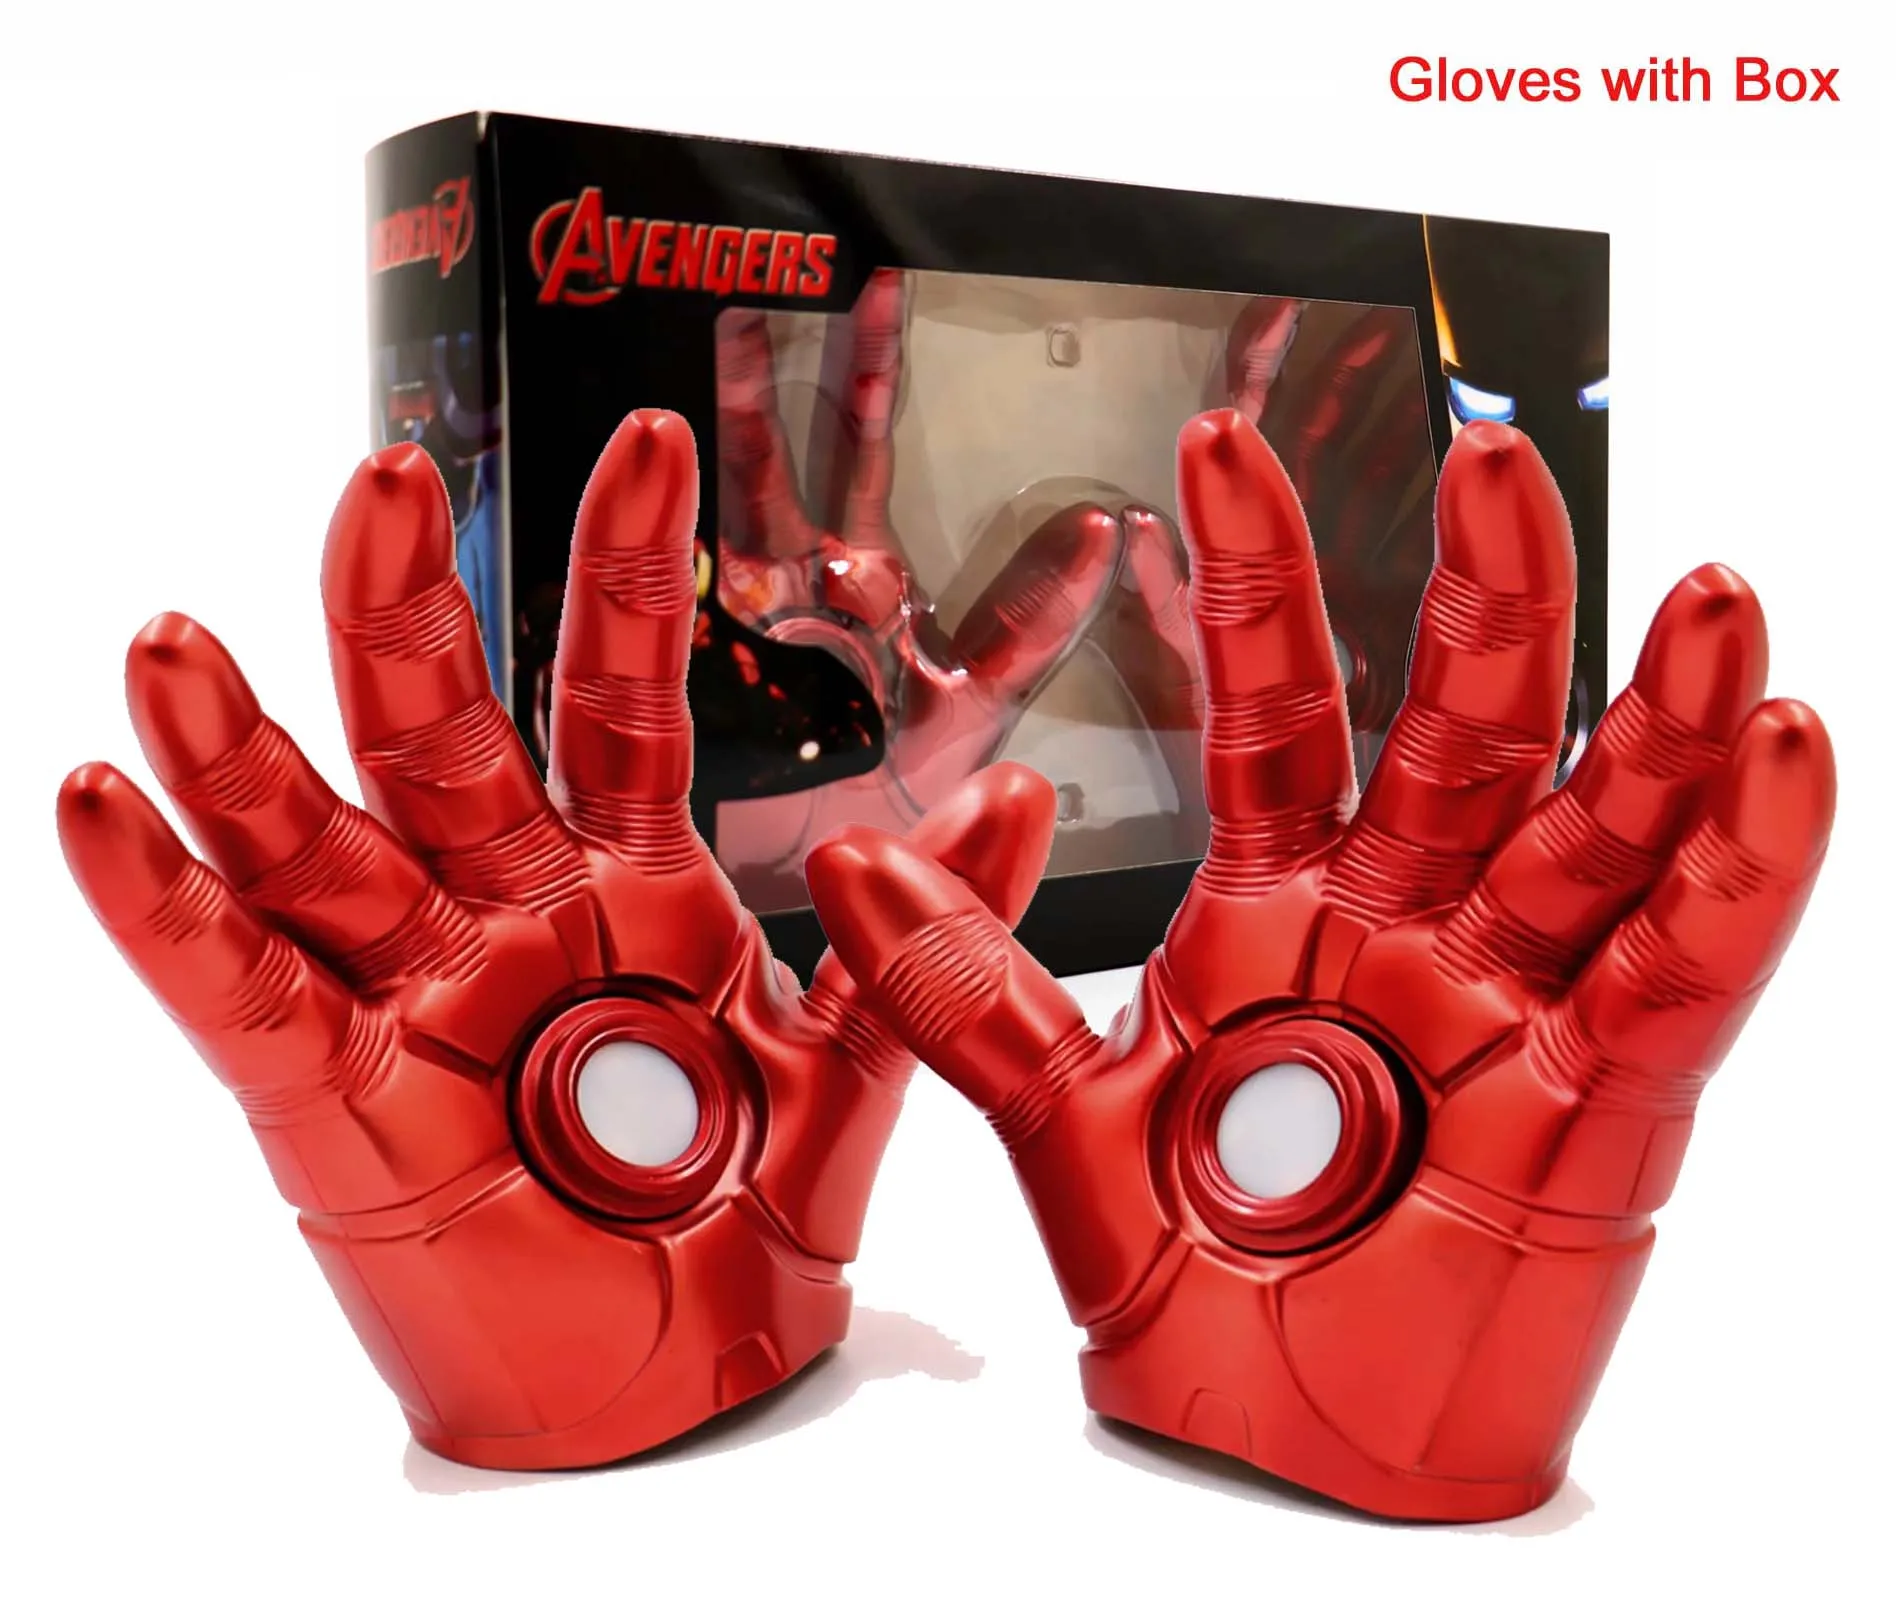 Marvel Мстители Бесконечность ВОЙНЫ ЖЕЛЕЗНЫЙ ЧЕЛОВЕК перчатка Led супергерой Железный человек Тони Старк перчатки фигурка Коллекционная модель Косплей Костюм игрушка - Цвет: Iron Man Glove W Box